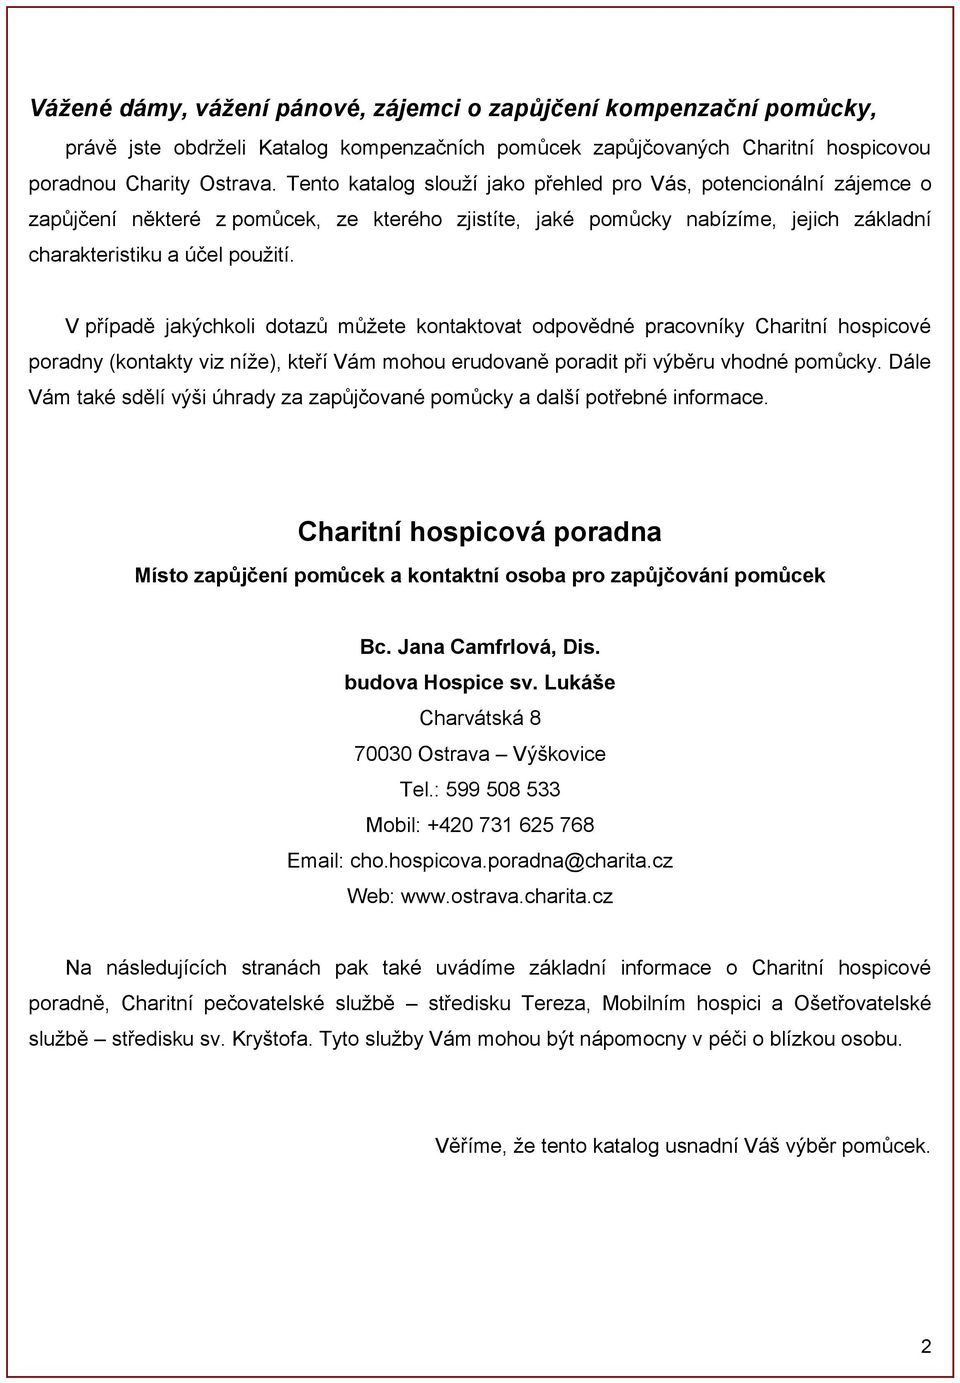 V případě jakýchkoli dotazů můžete kontaktovat odpovědné pracovníky Charitní hospicové poradny (kontakty viz níže), kteří Vám mohou erudovaně poradit při výběru vhodné pomůcky.